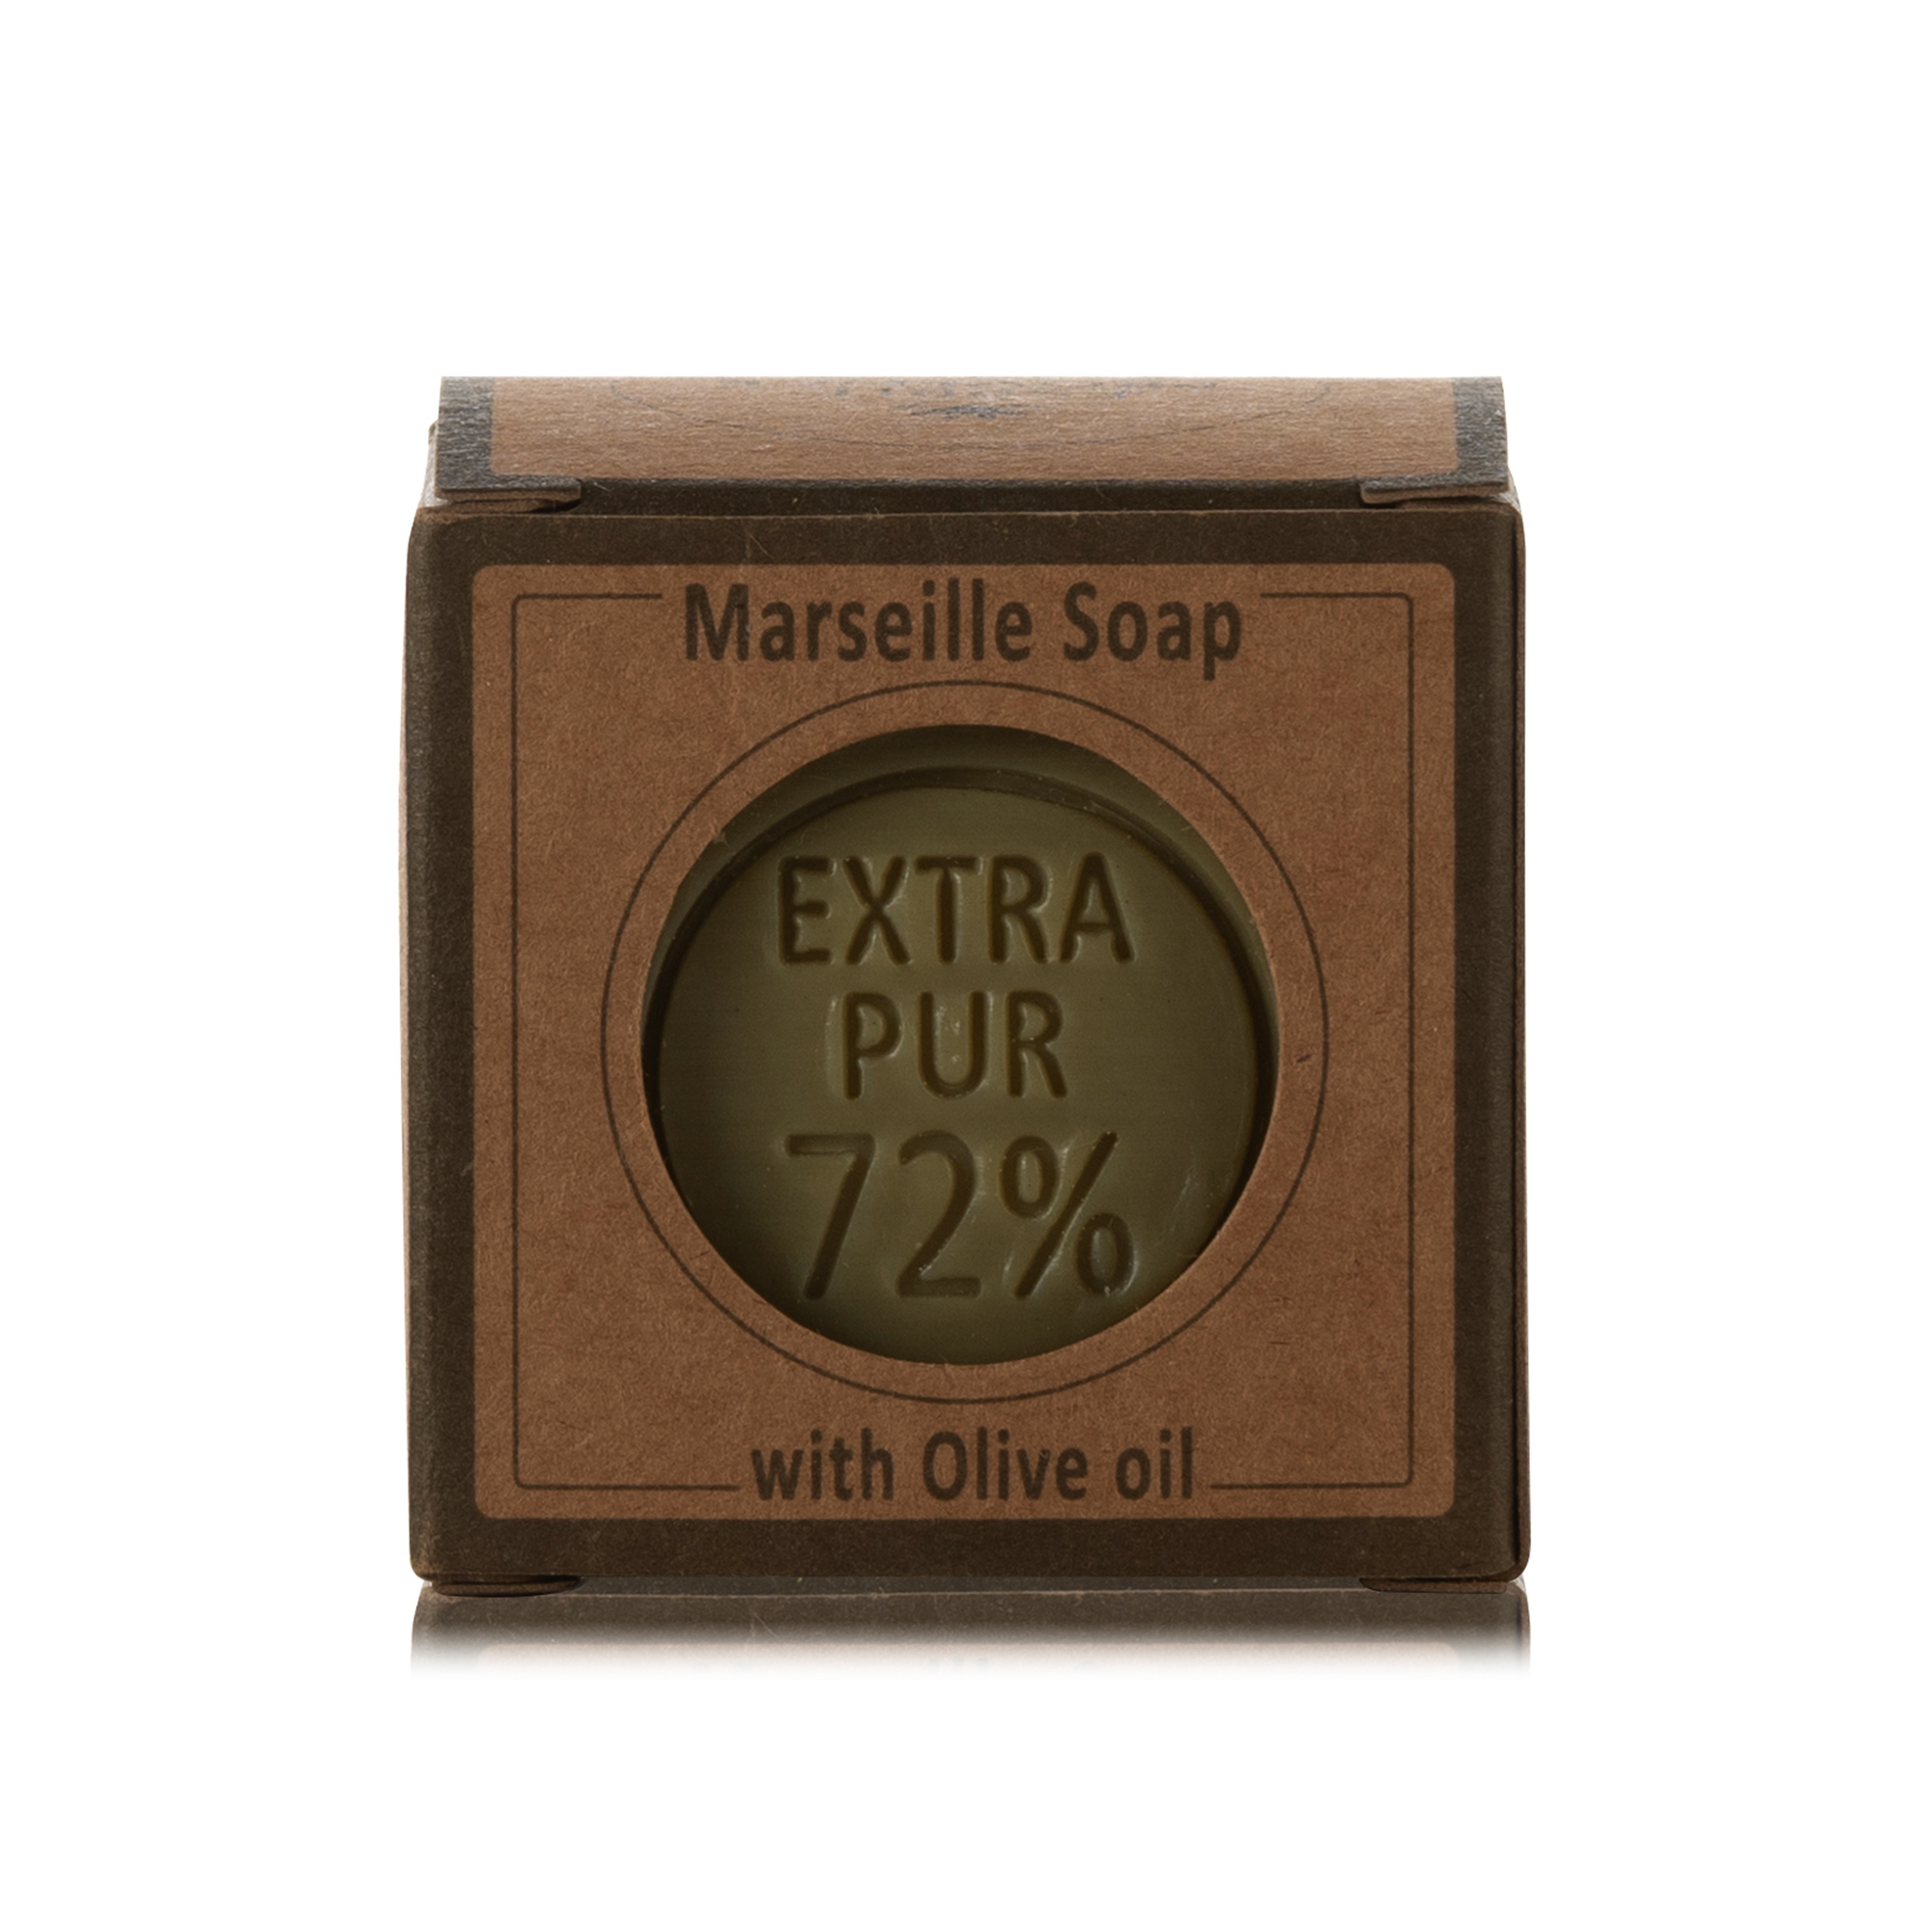 Huile d'olive Savon de Marseille 72% , cube de 100g